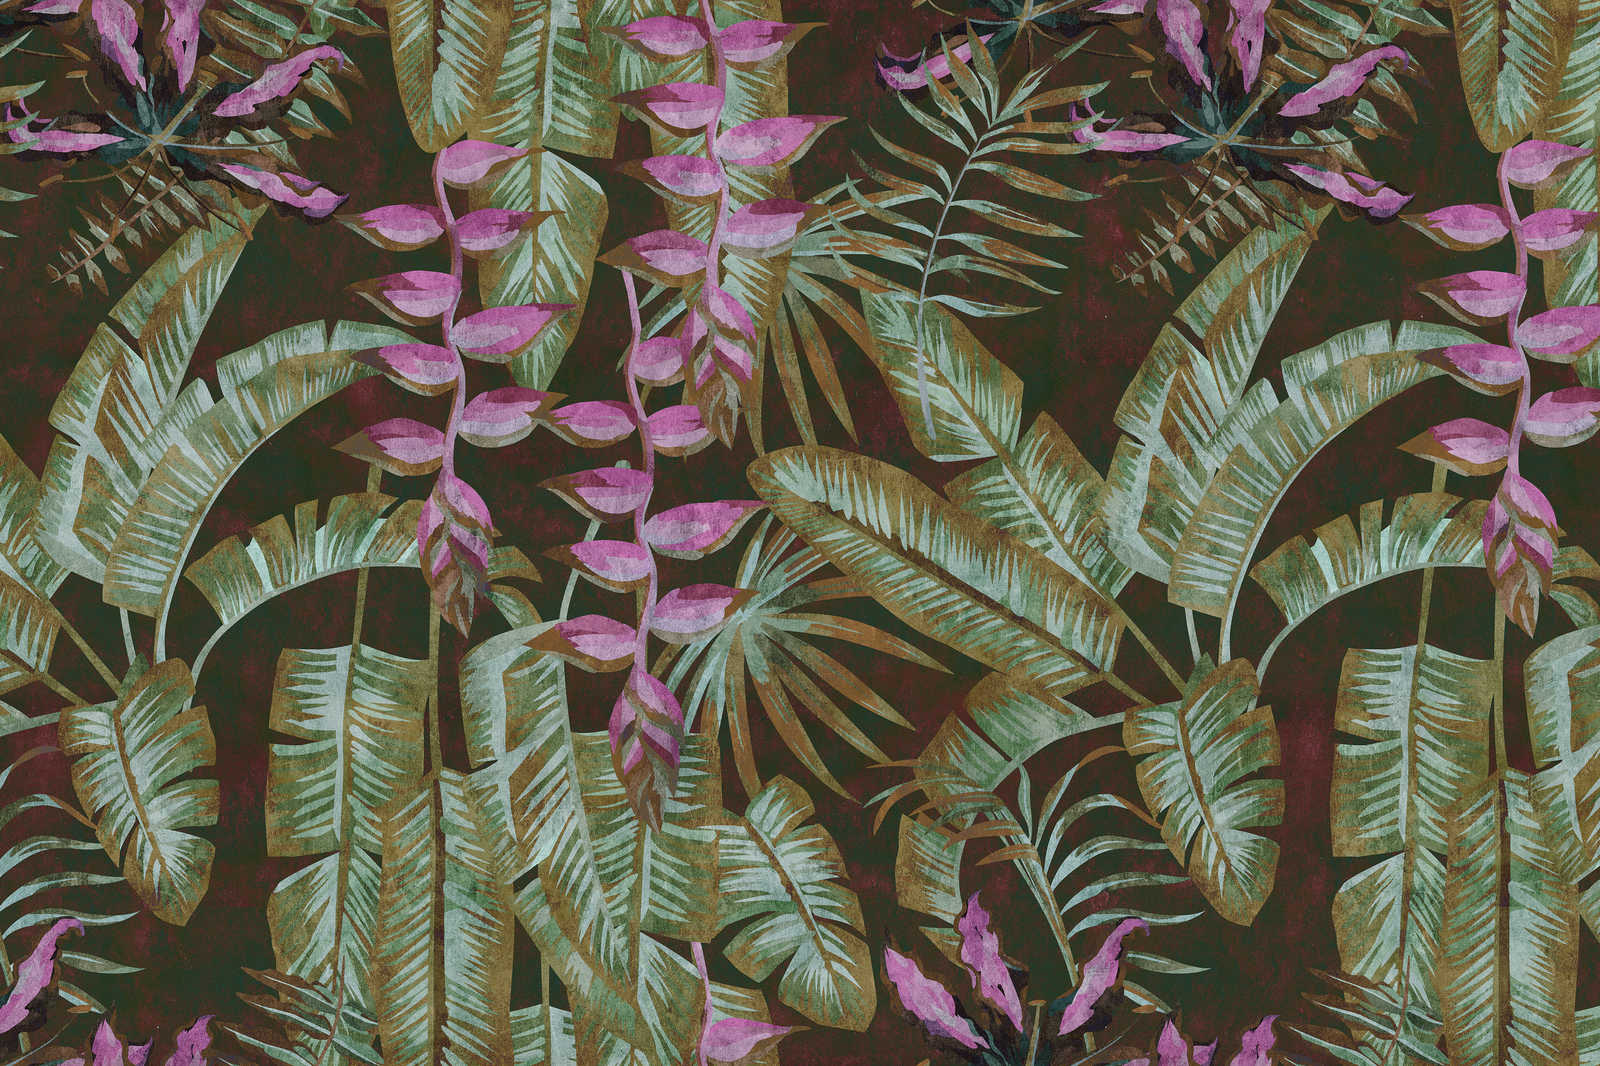             Tropicana 1 - Toile jungle avec feuilles de bananier & fougères - 0,90 m x 0,60 m
        